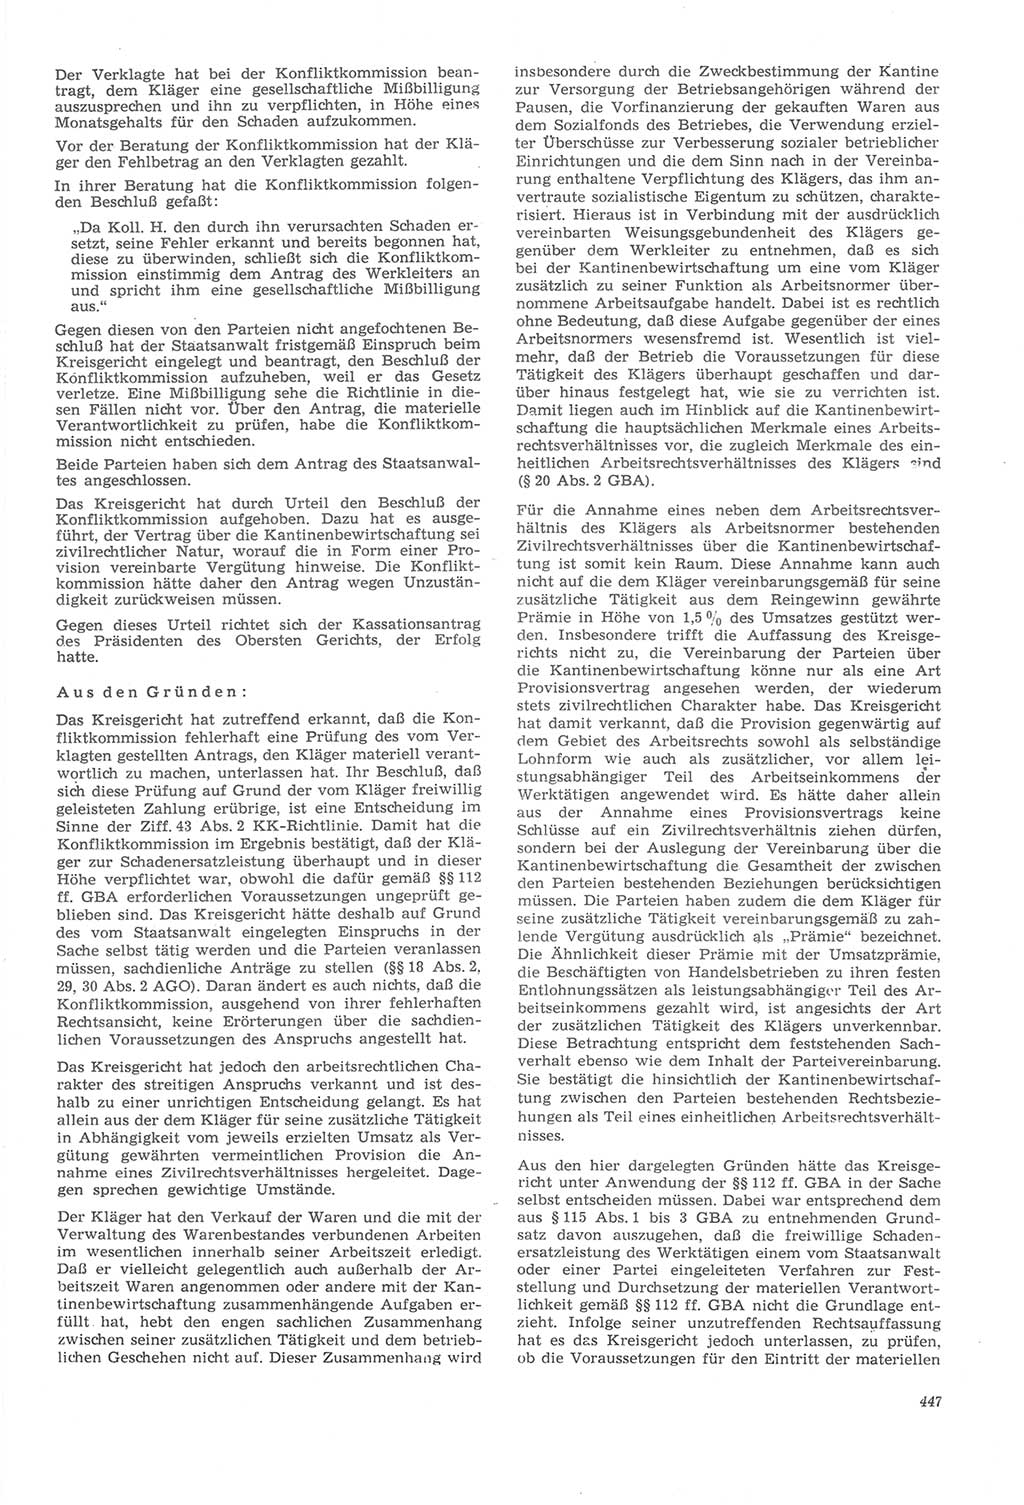 Neue Justiz (NJ), Zeitschrift für Recht und Rechtswissenschaft [Deutsche Demokratische Republik (DDR)], 22. Jahrgang 1968, Seite 447 (NJ DDR 1968, S. 447)